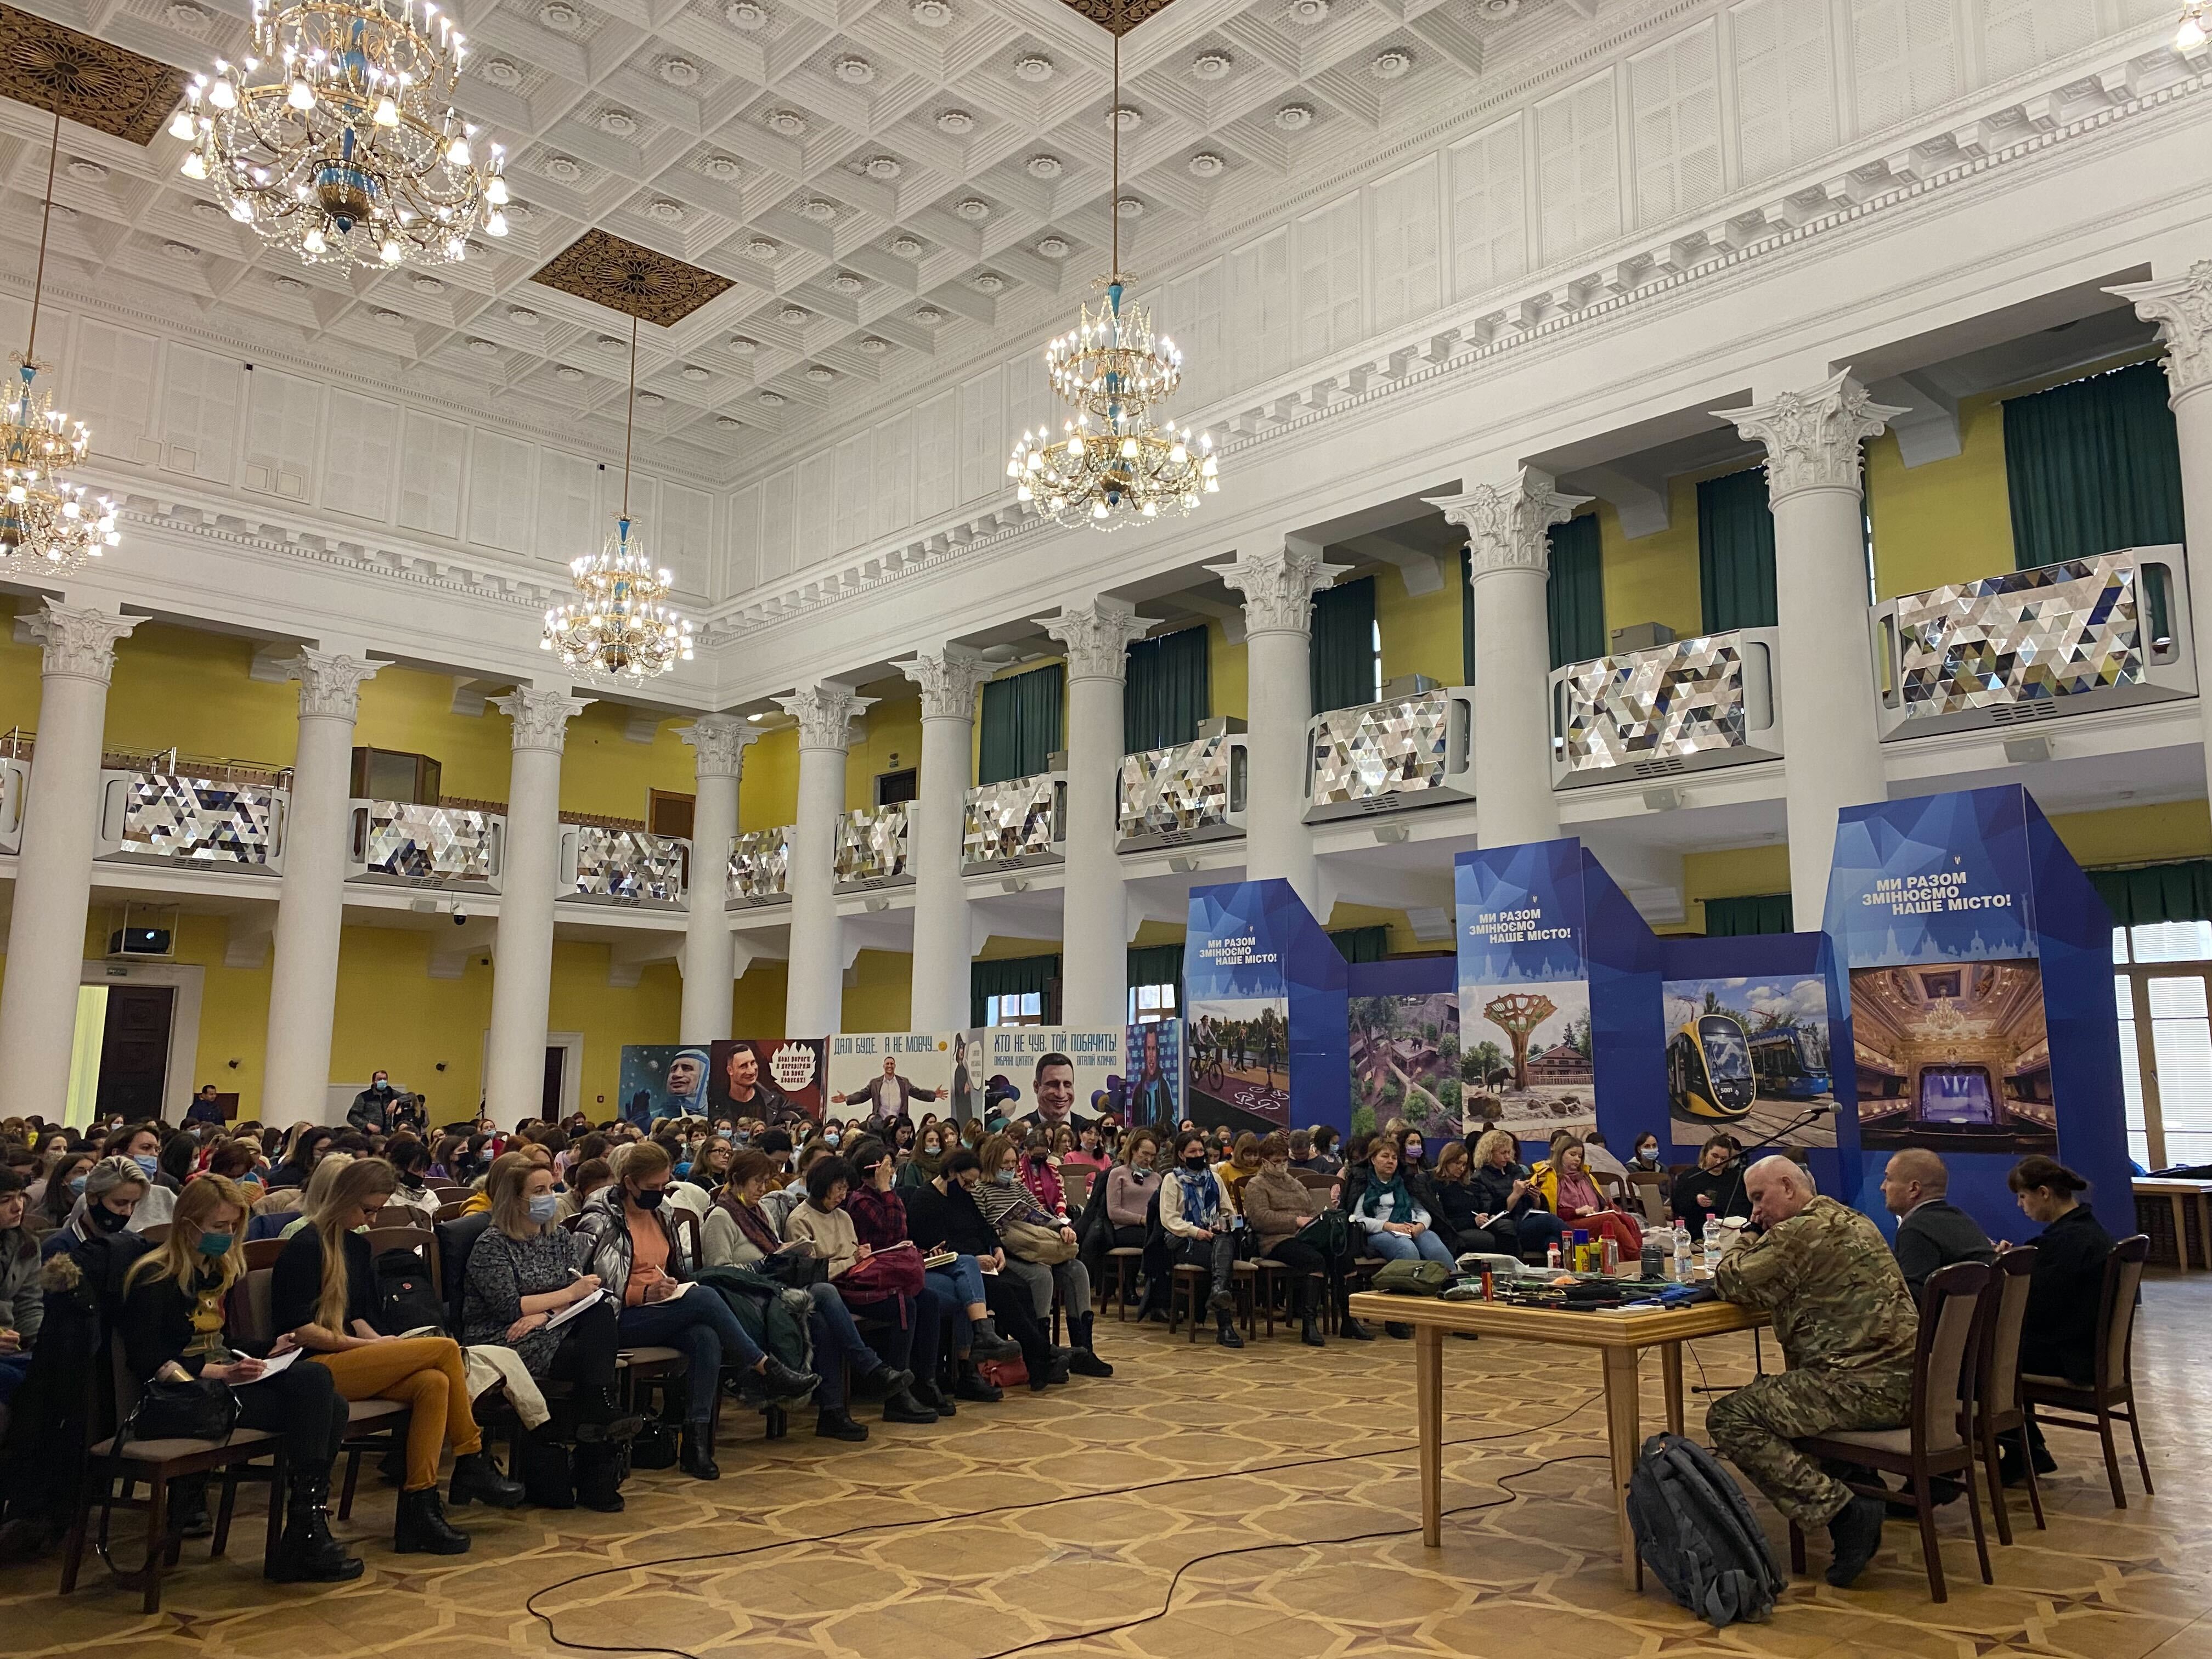 Körülbelül 240 nő vett részt a túlélési gyakorlatokon szombaton a kijevi városházán.